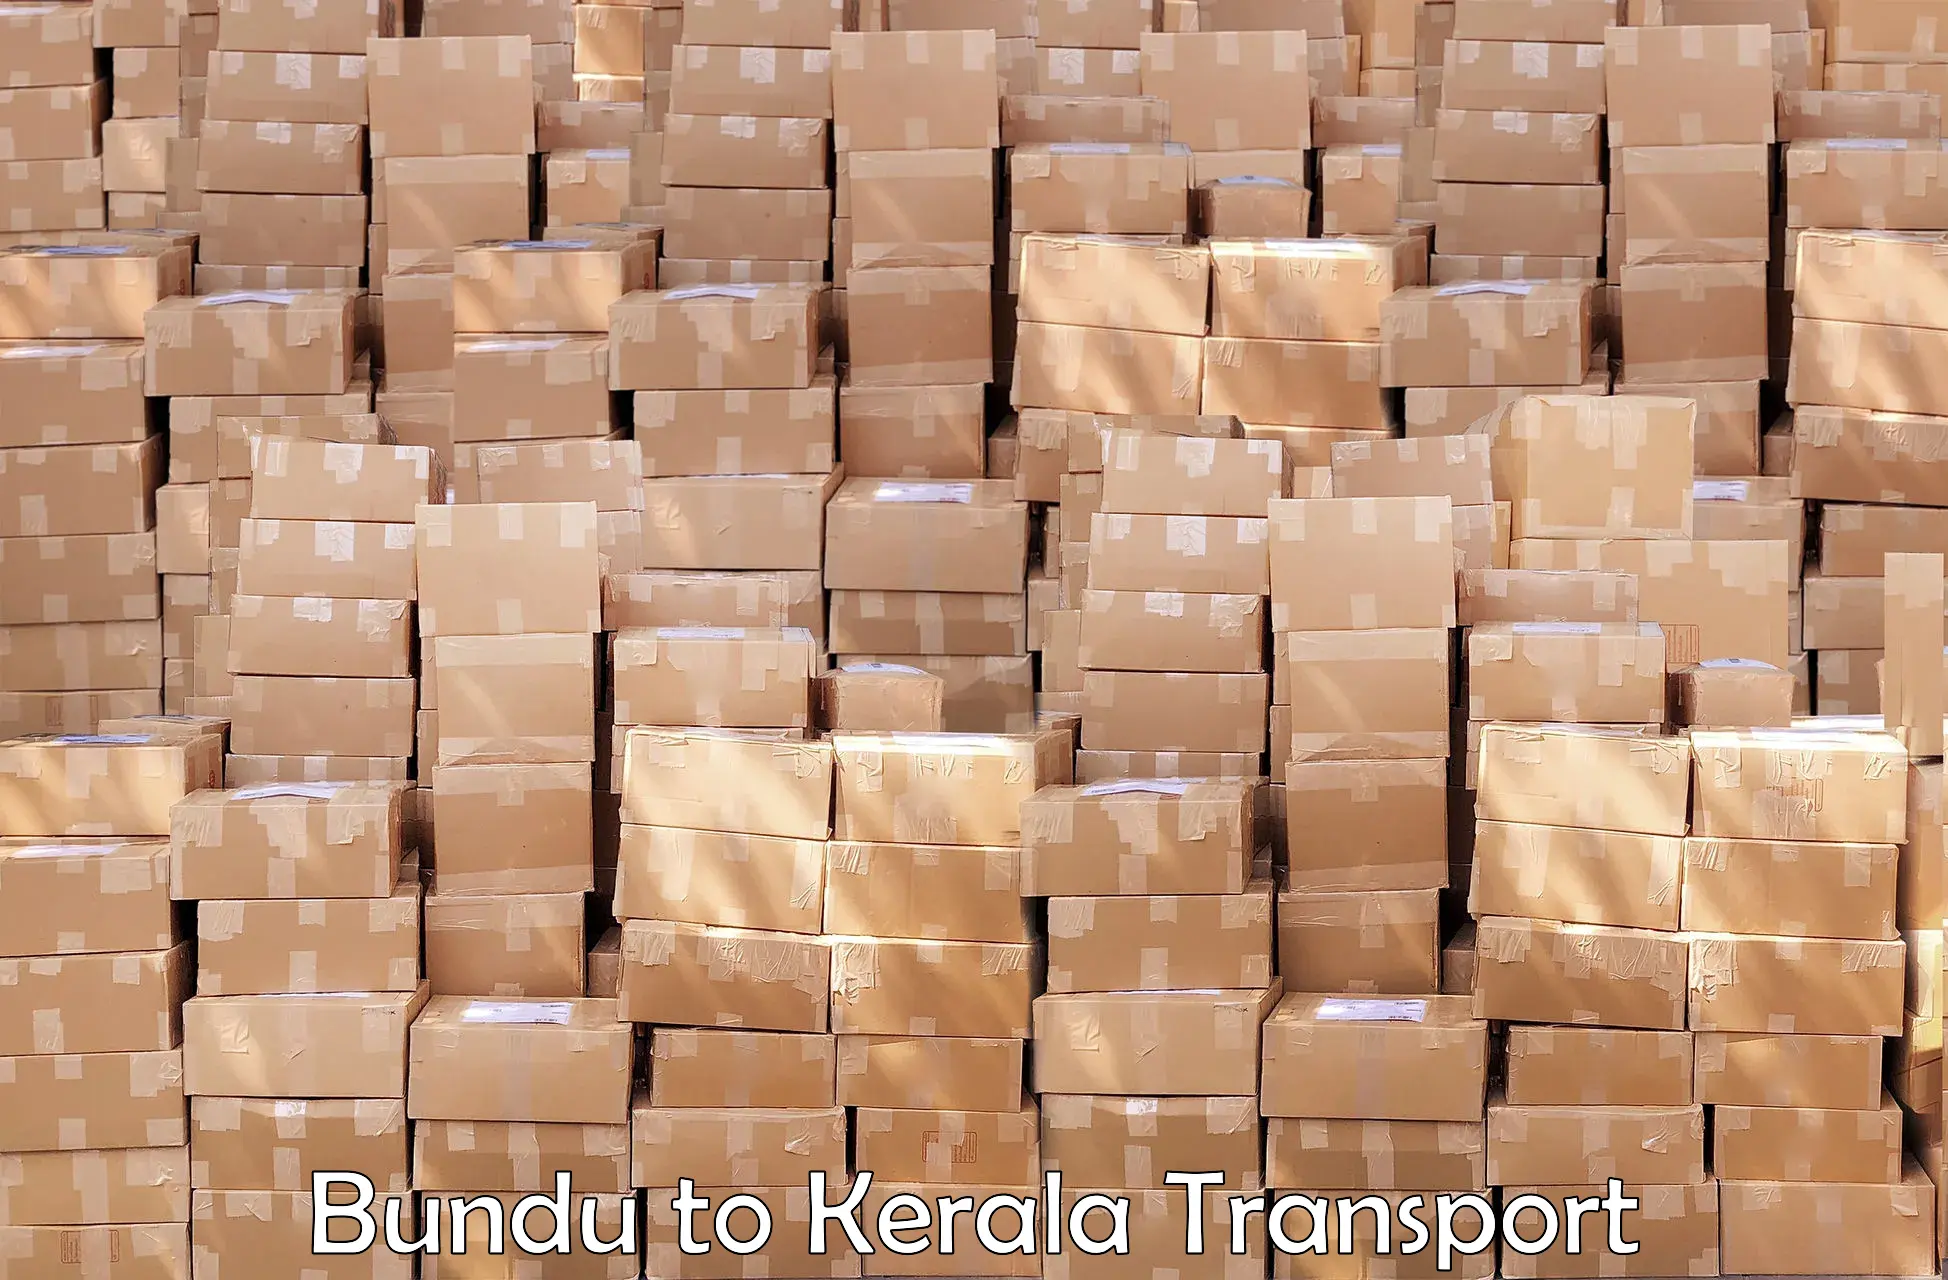 Bike shipping service Bundu to Kerala